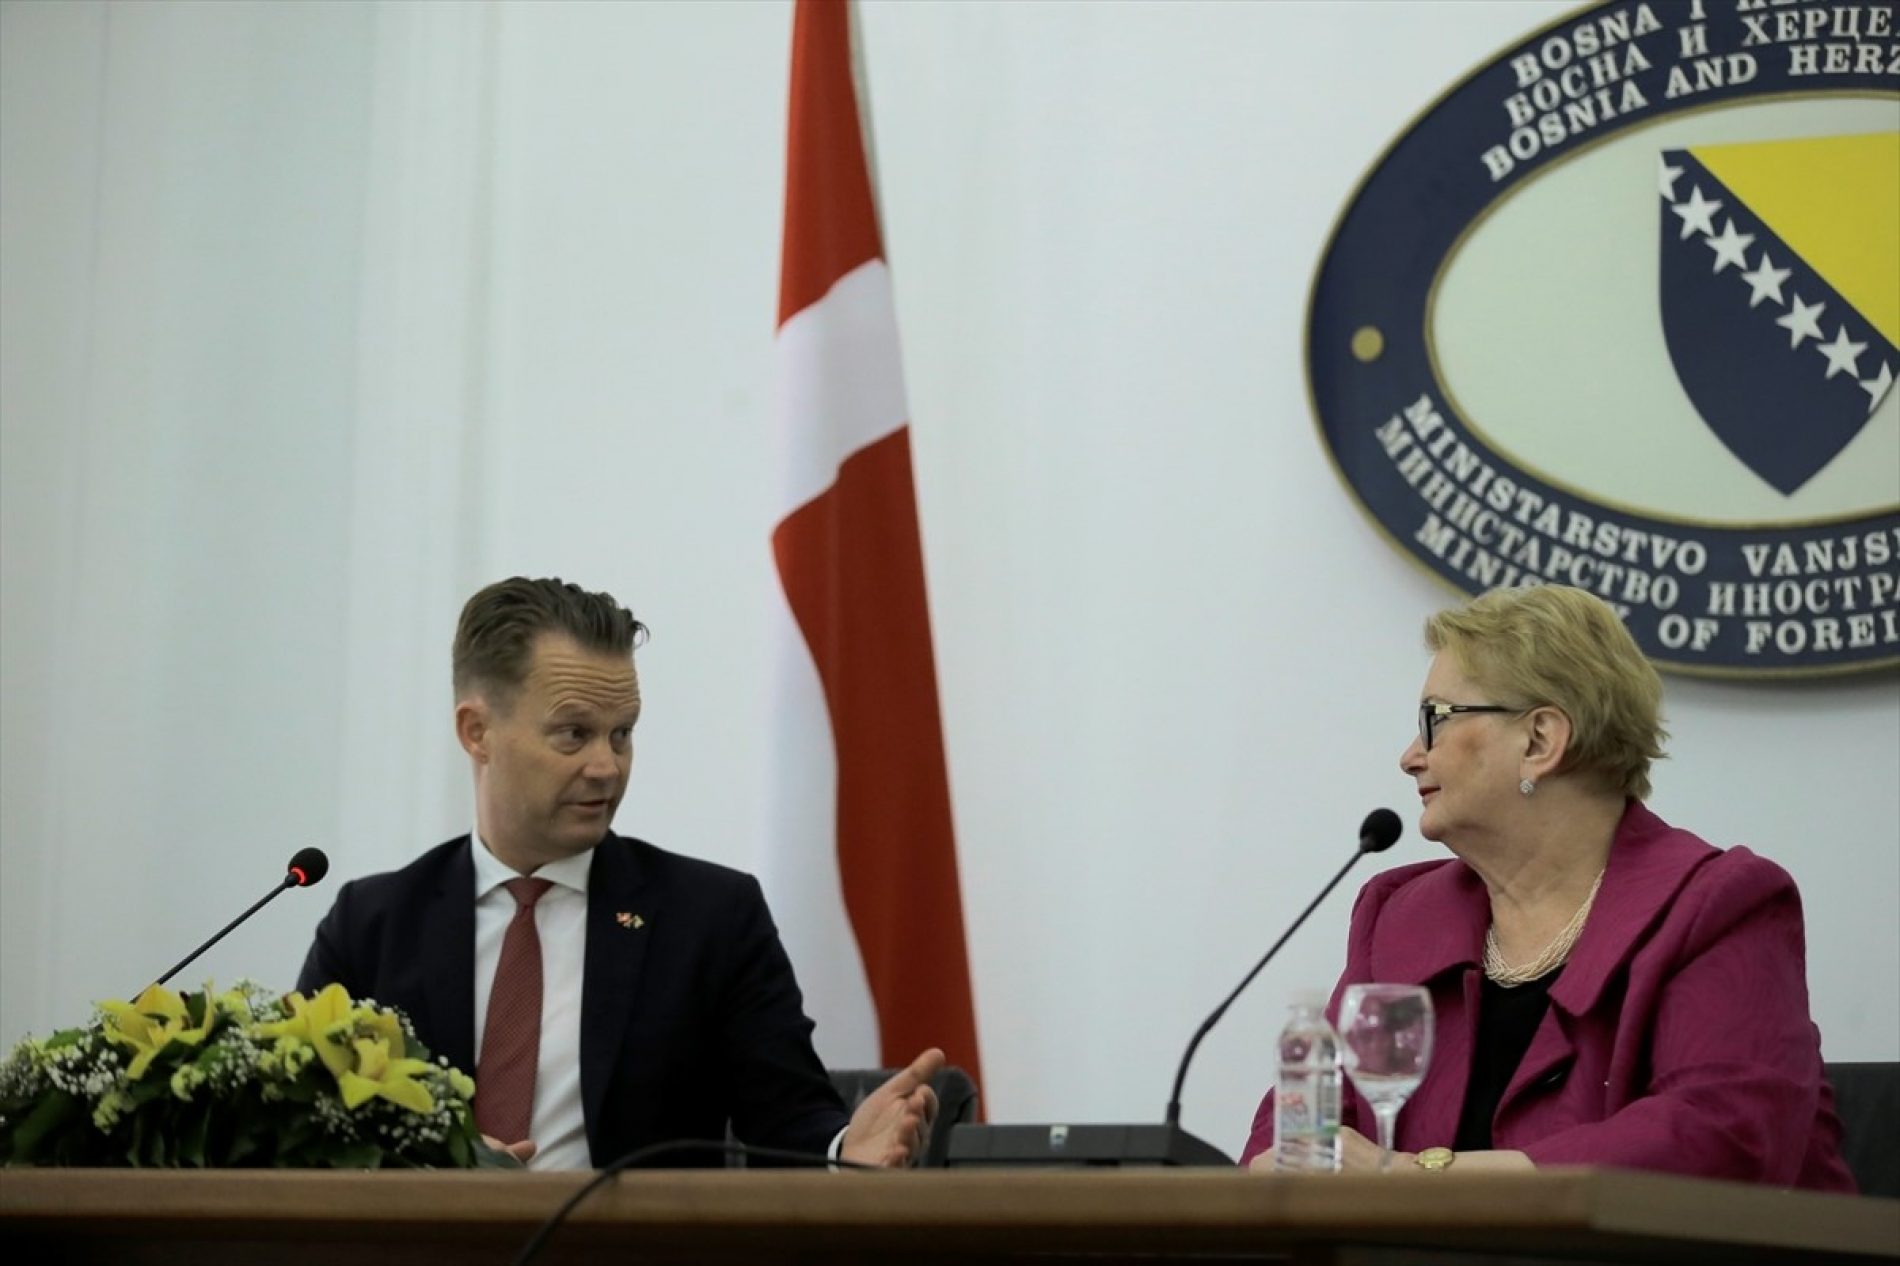 Danski ministar vanjskih poslova u posjeti Bosni i Hercegovini